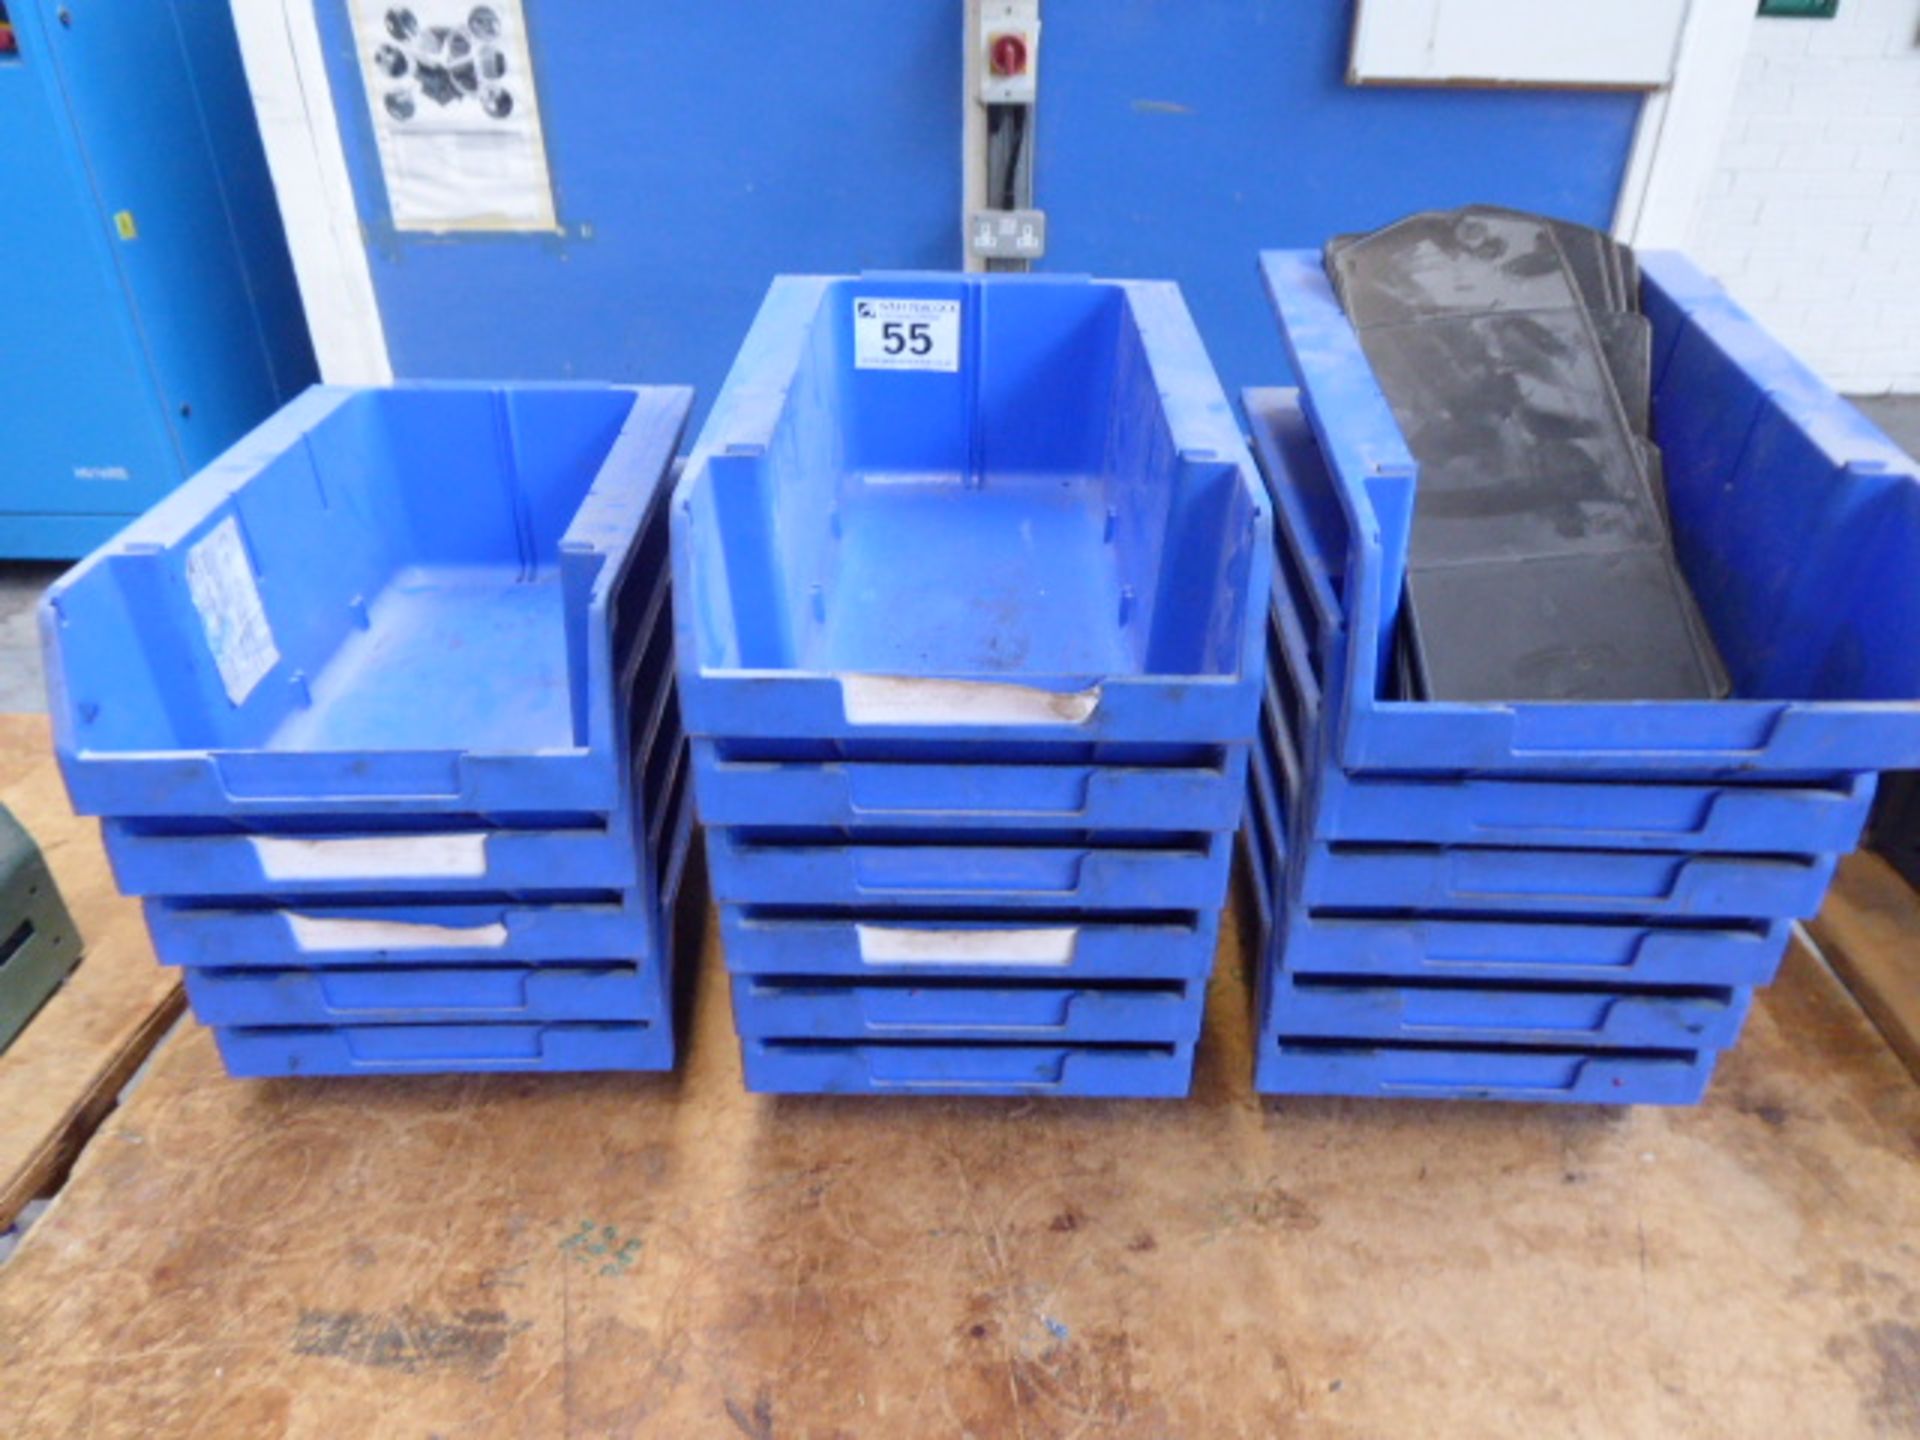 17 blue plastic lin bins